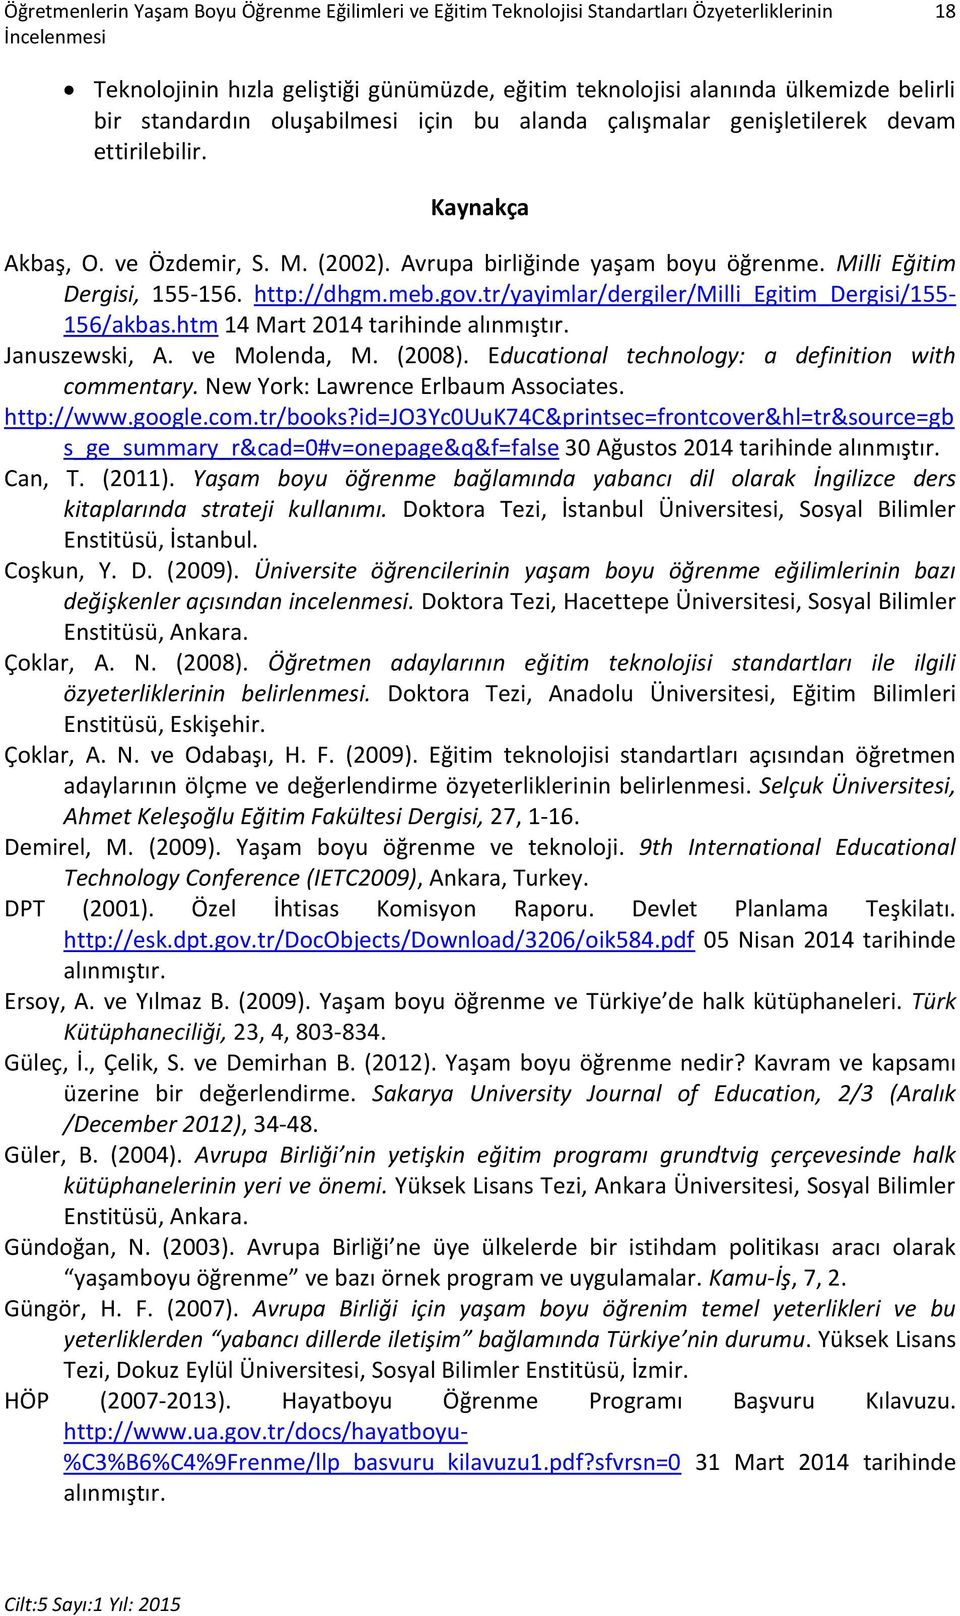 Milli Eğitim Dergisi, 155-156. http://dhgm.meb.gov.tr/yayimlar/dergiler/milli_egitim_dergisi/155-156/akbas.htm 14 Mart 2014 tarihinde alınmıştır. Januszewski, A. ve Molenda, M. (2008).